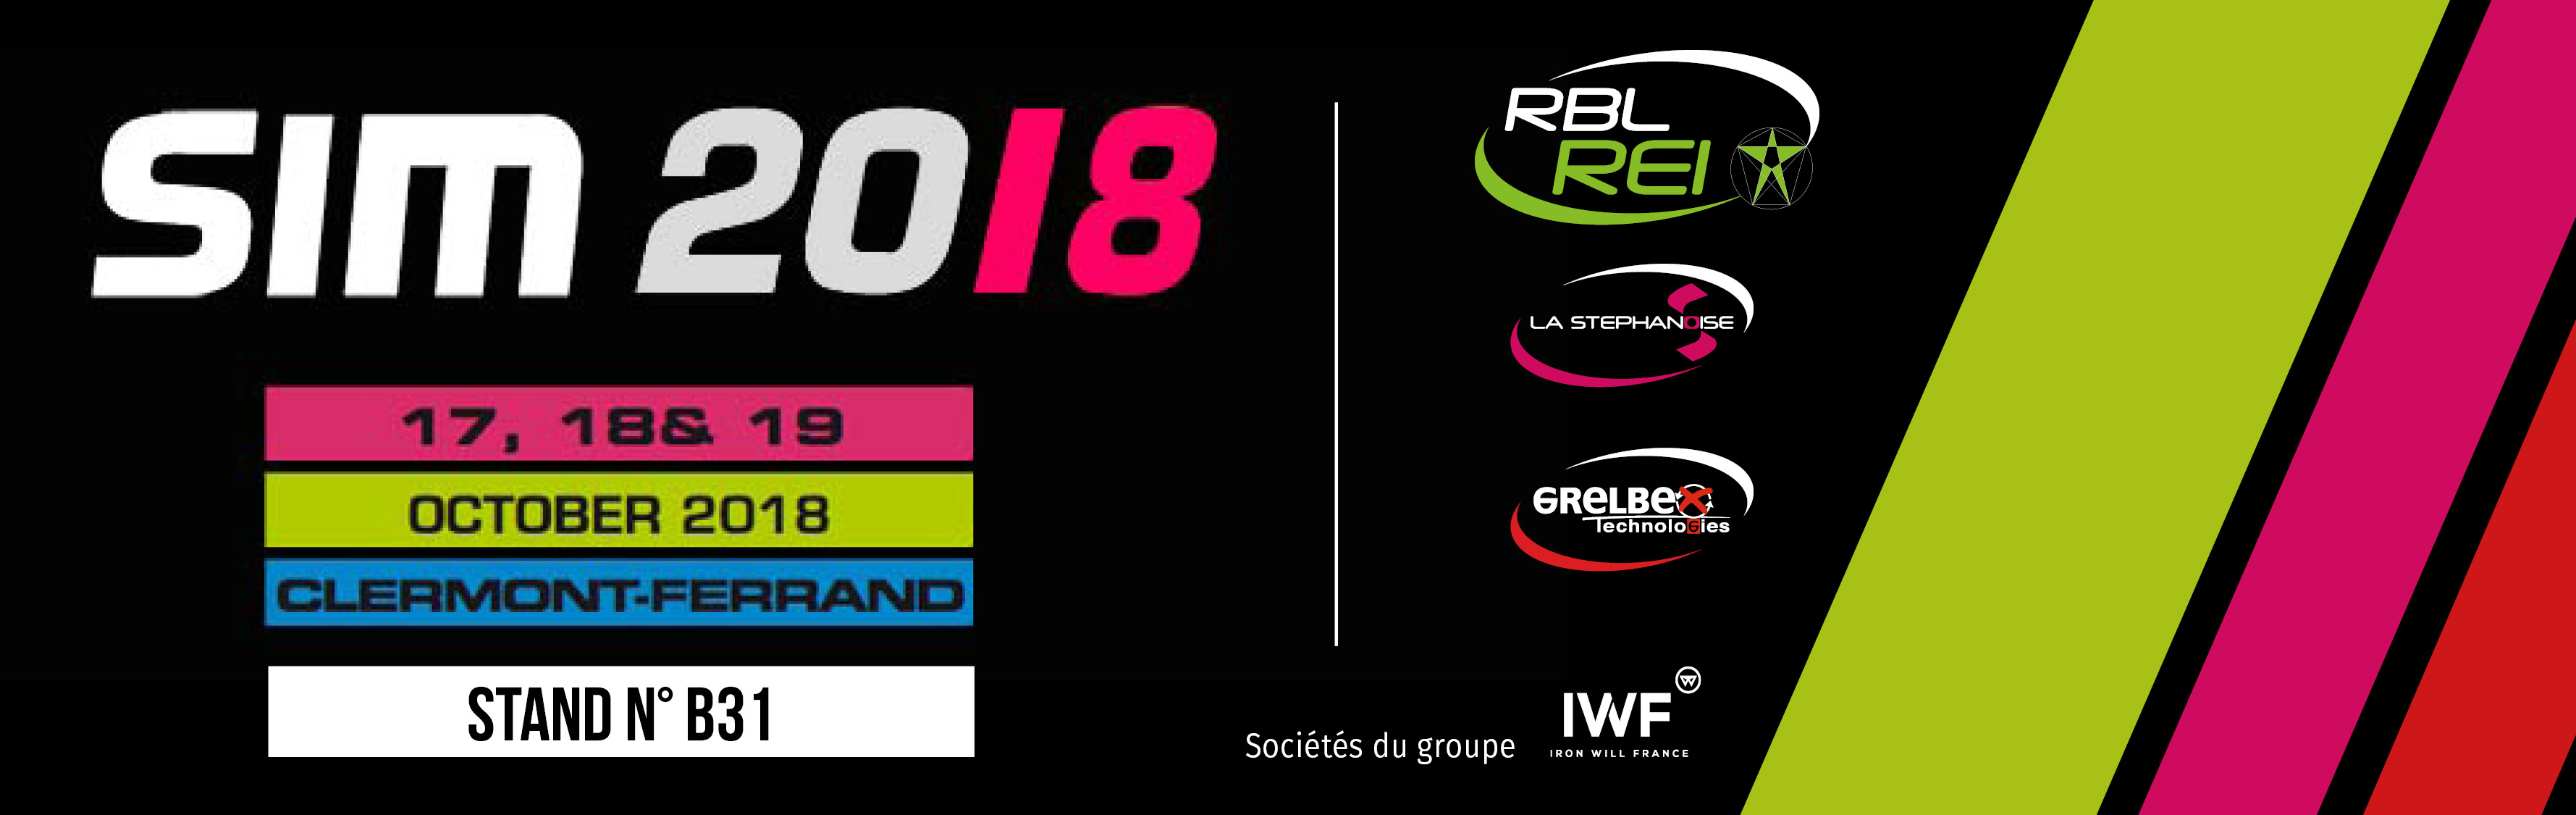 SIM 2018 // FRANCE - Clermont-Ferrand // 17, 18 et 19 Octobre 2018